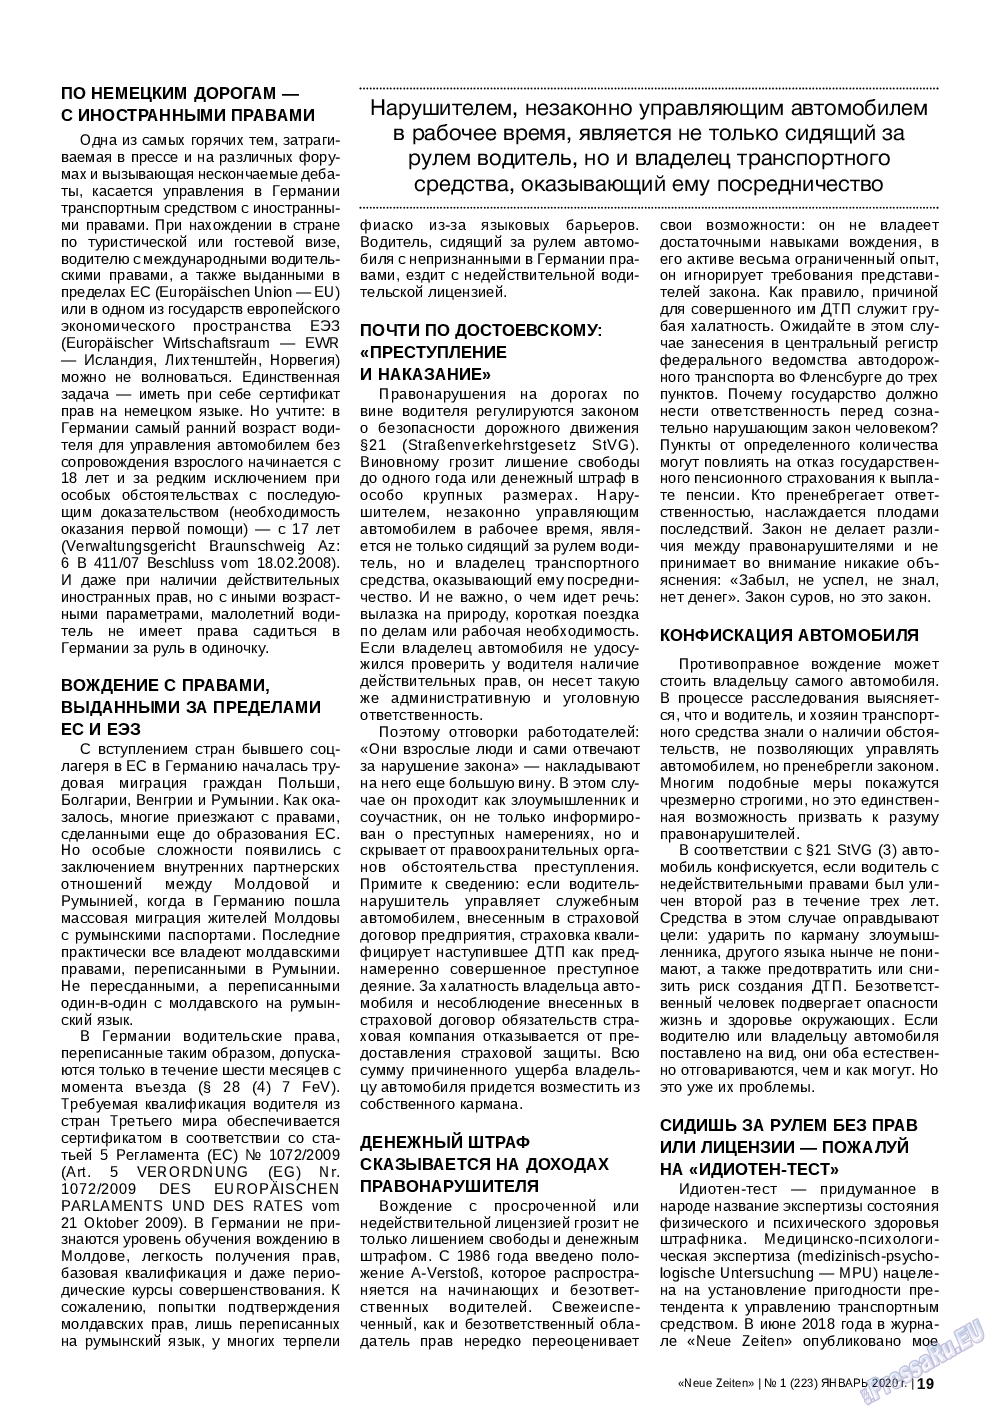 Neue Zeiten, журнал. 2020 №1 стр.19